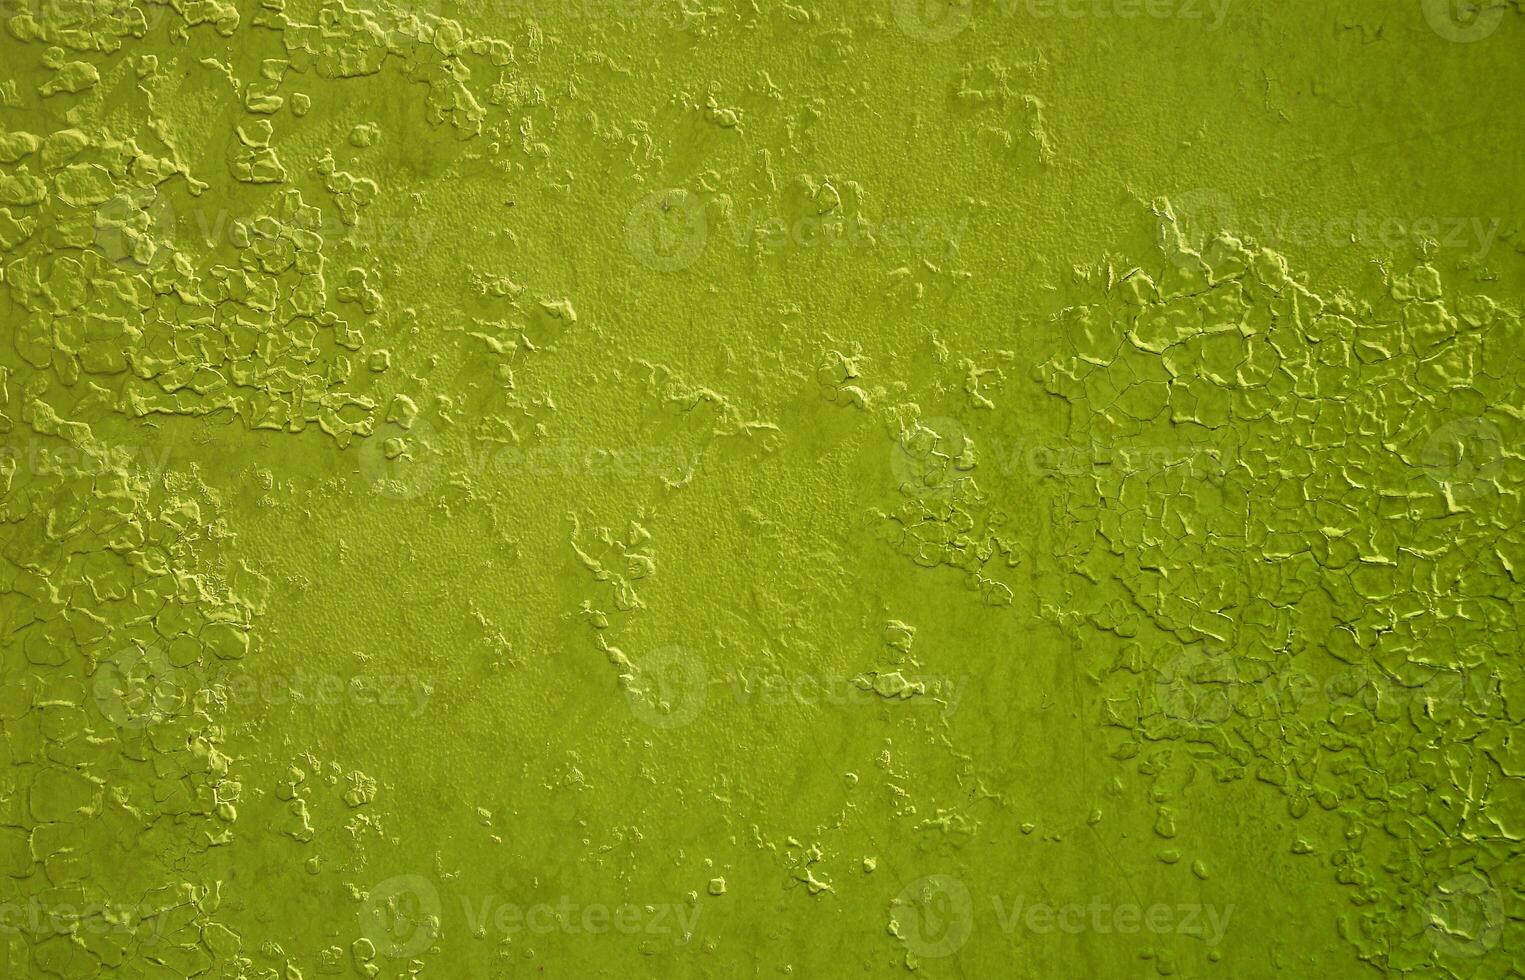 textur av en metall vägg med ett gammal måla beläggning den där byter under de inflytande av tid och väder foto